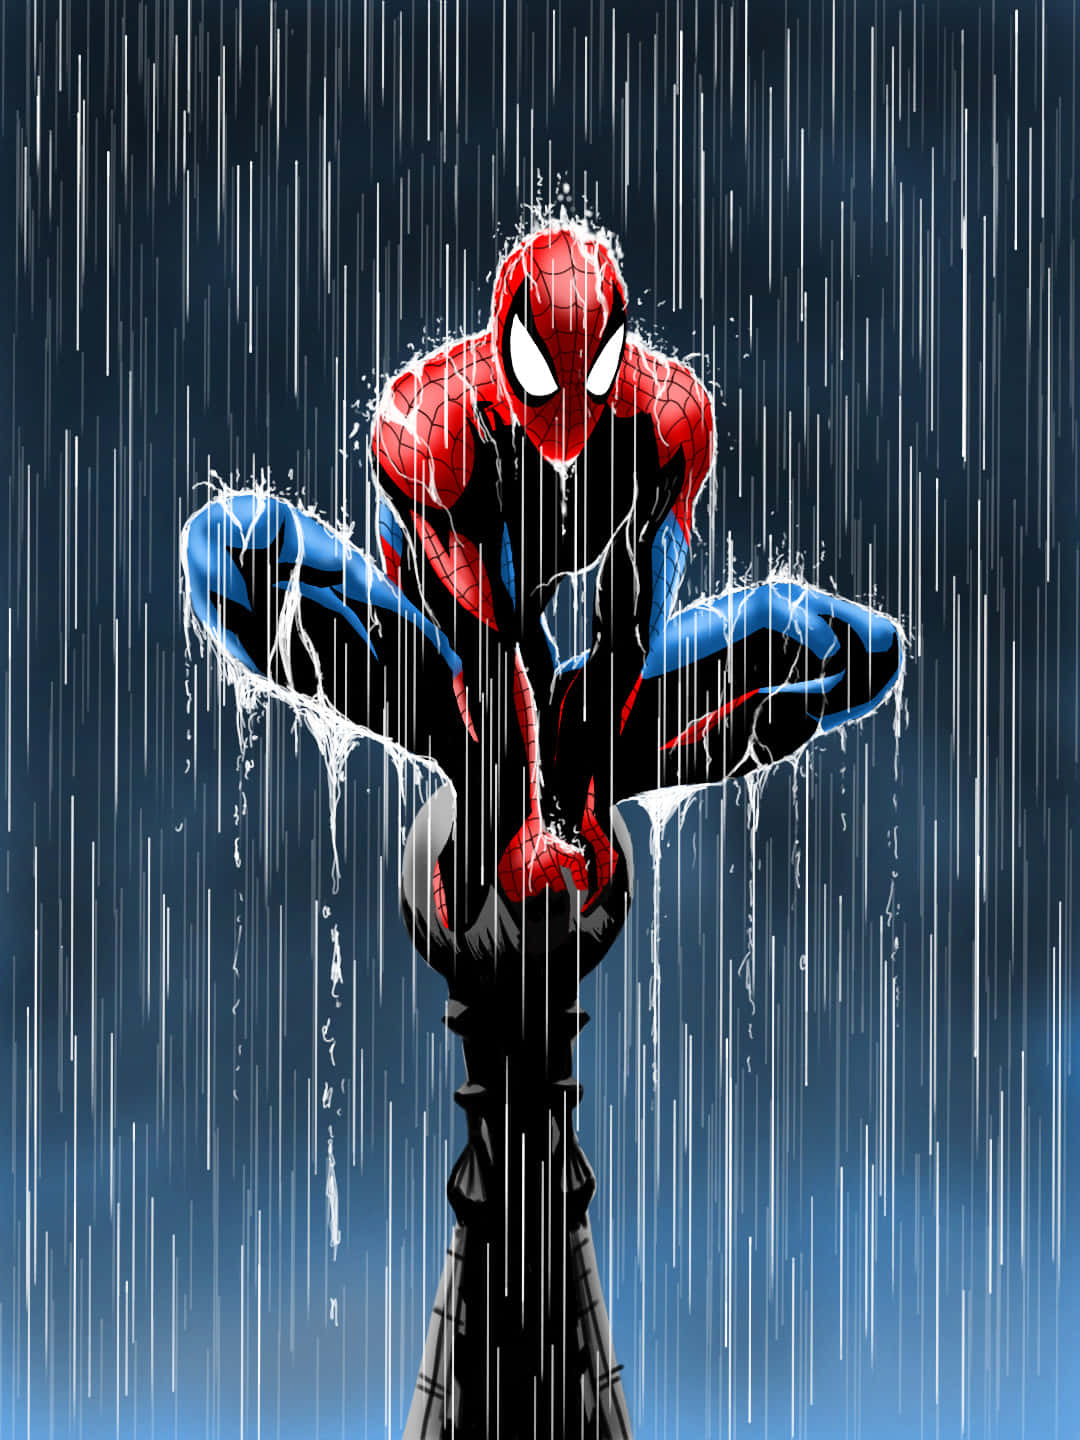 Imágenesde Spider Man